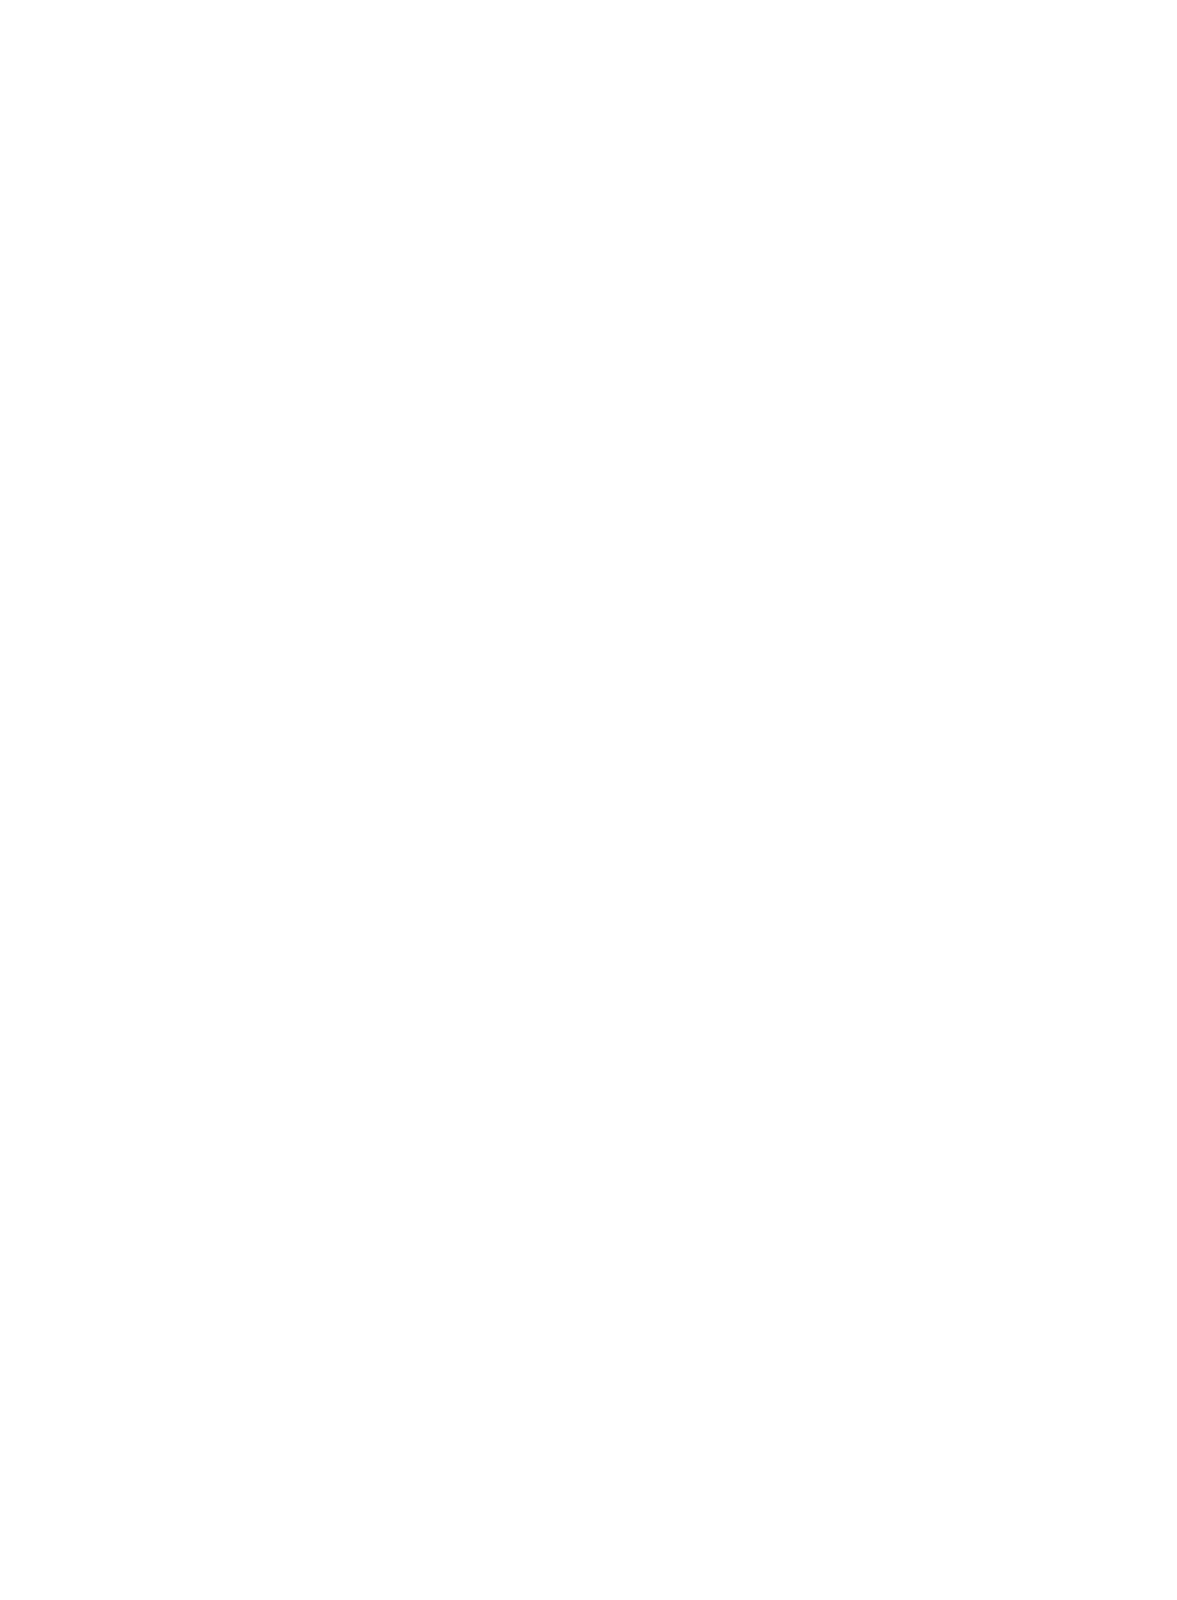 東方神起、約4年ぶりのオリジナルアルバム「TOMORROW」が各種音楽チャートを席巻サムネイル画像!